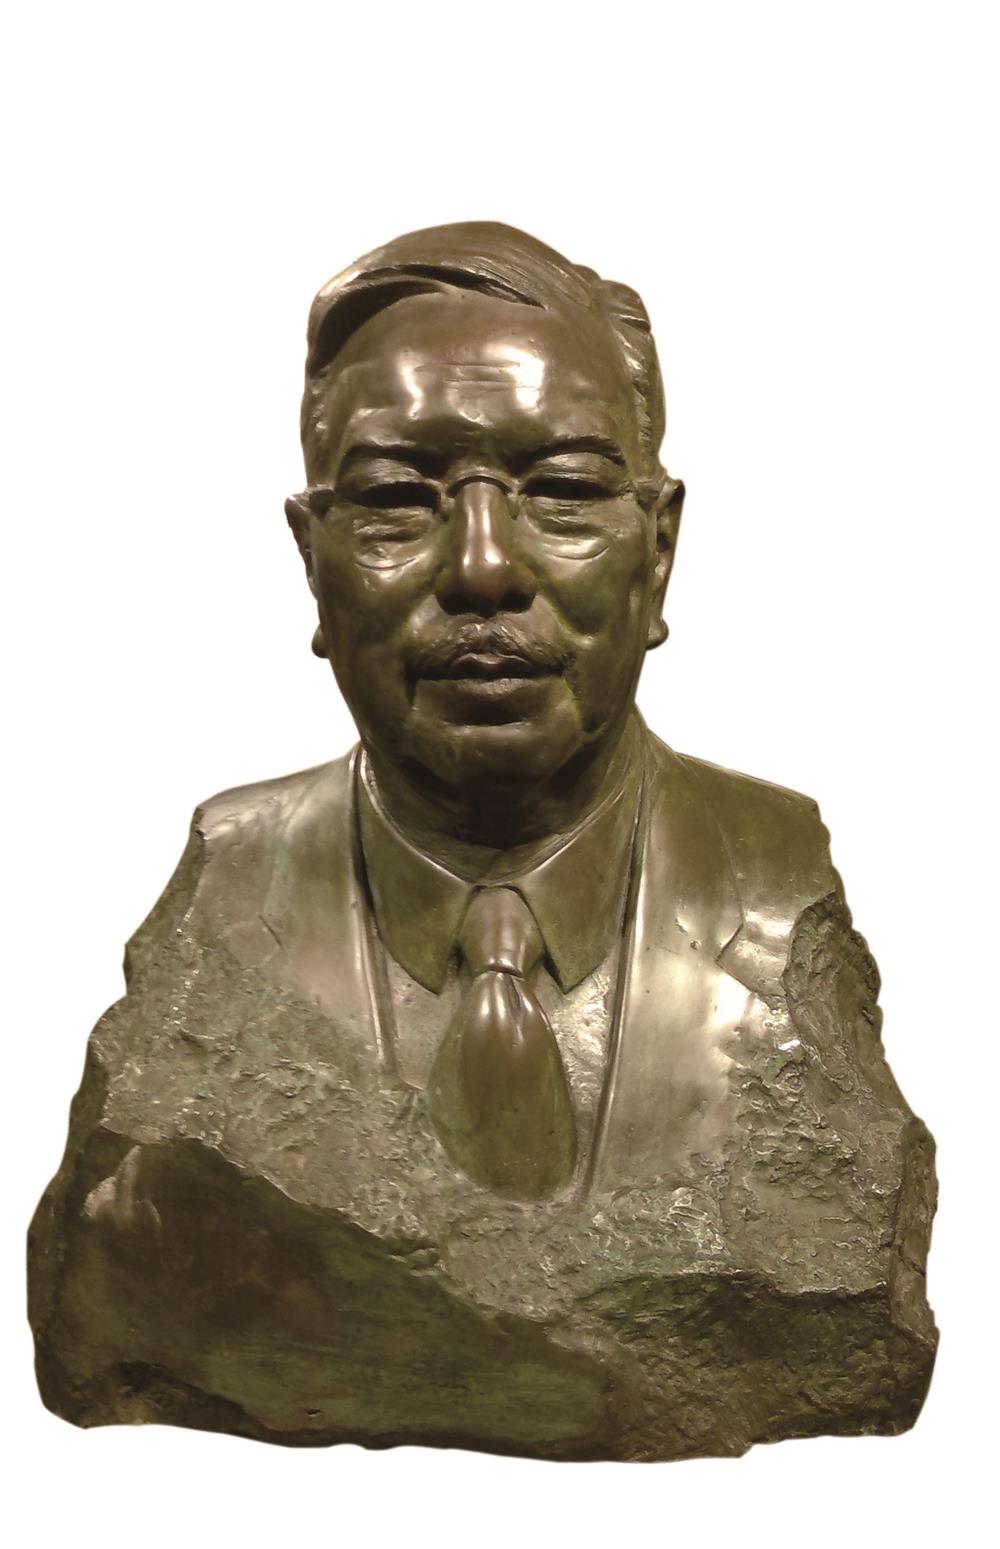 『雕塑头条』致敬中国著名雕塑家潘鹤先生